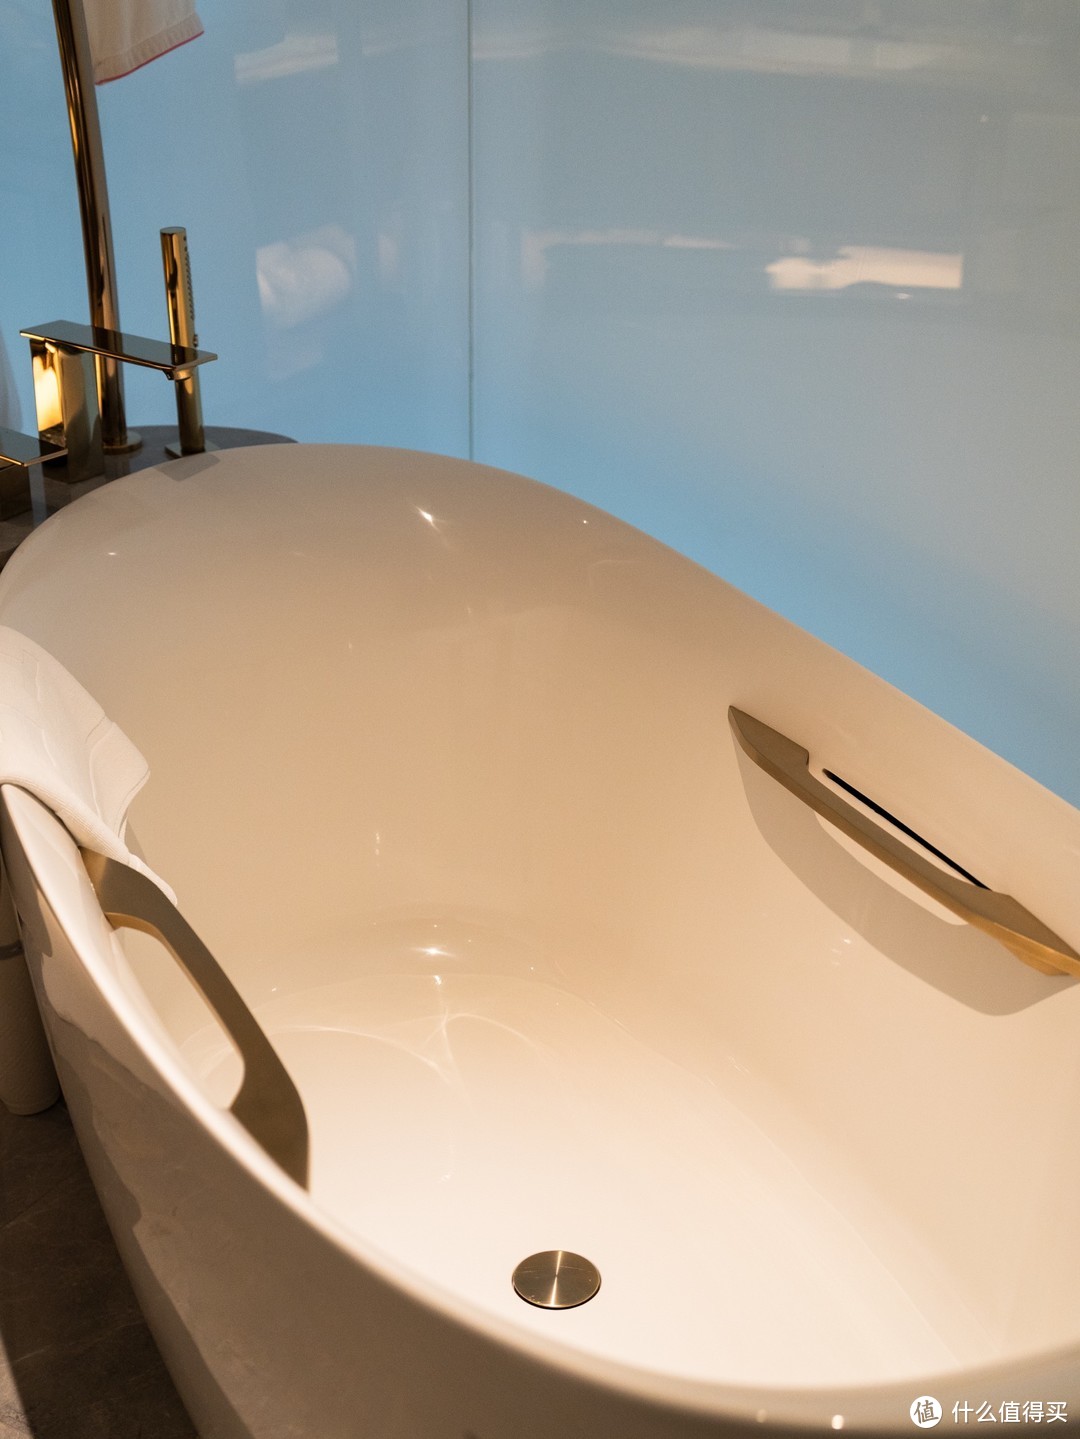 浴缸的造型非常符合人体工程学设计，很舒服！